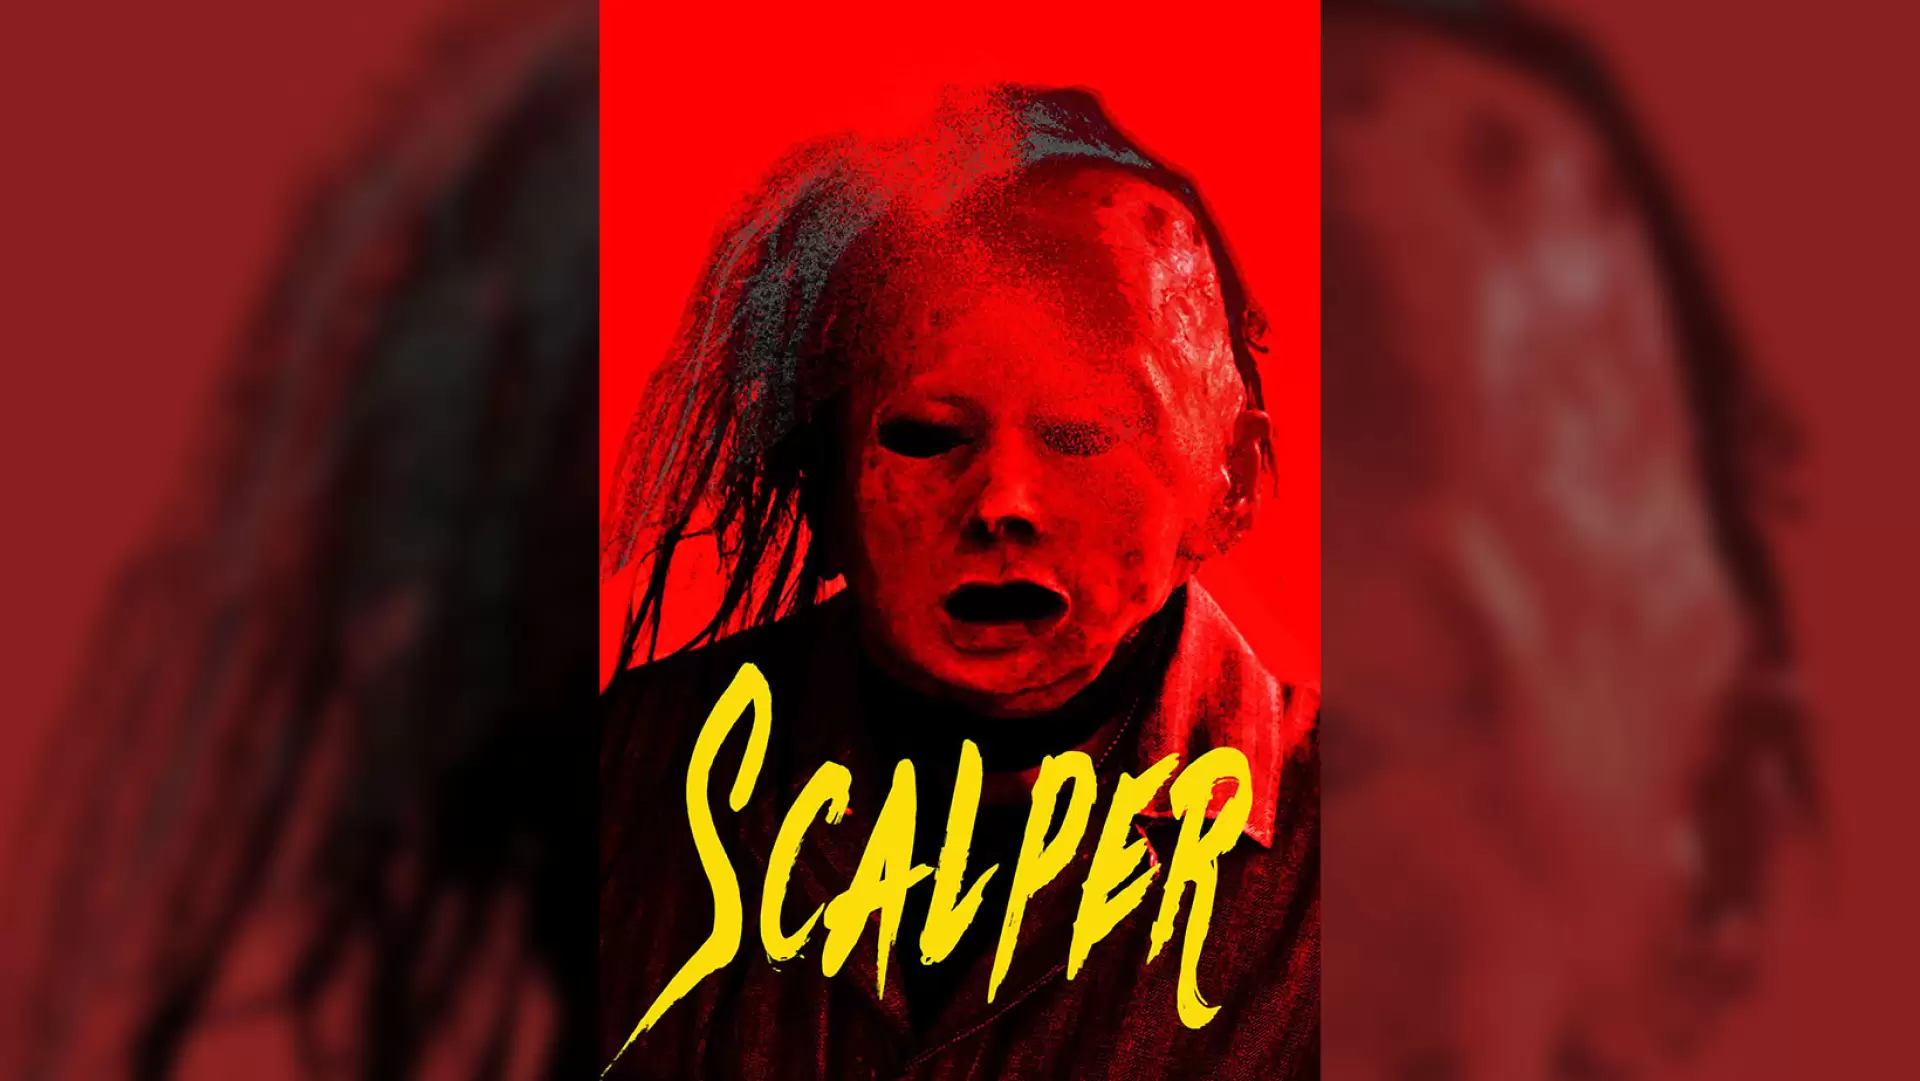 دانلود فیلم Scalper 2023